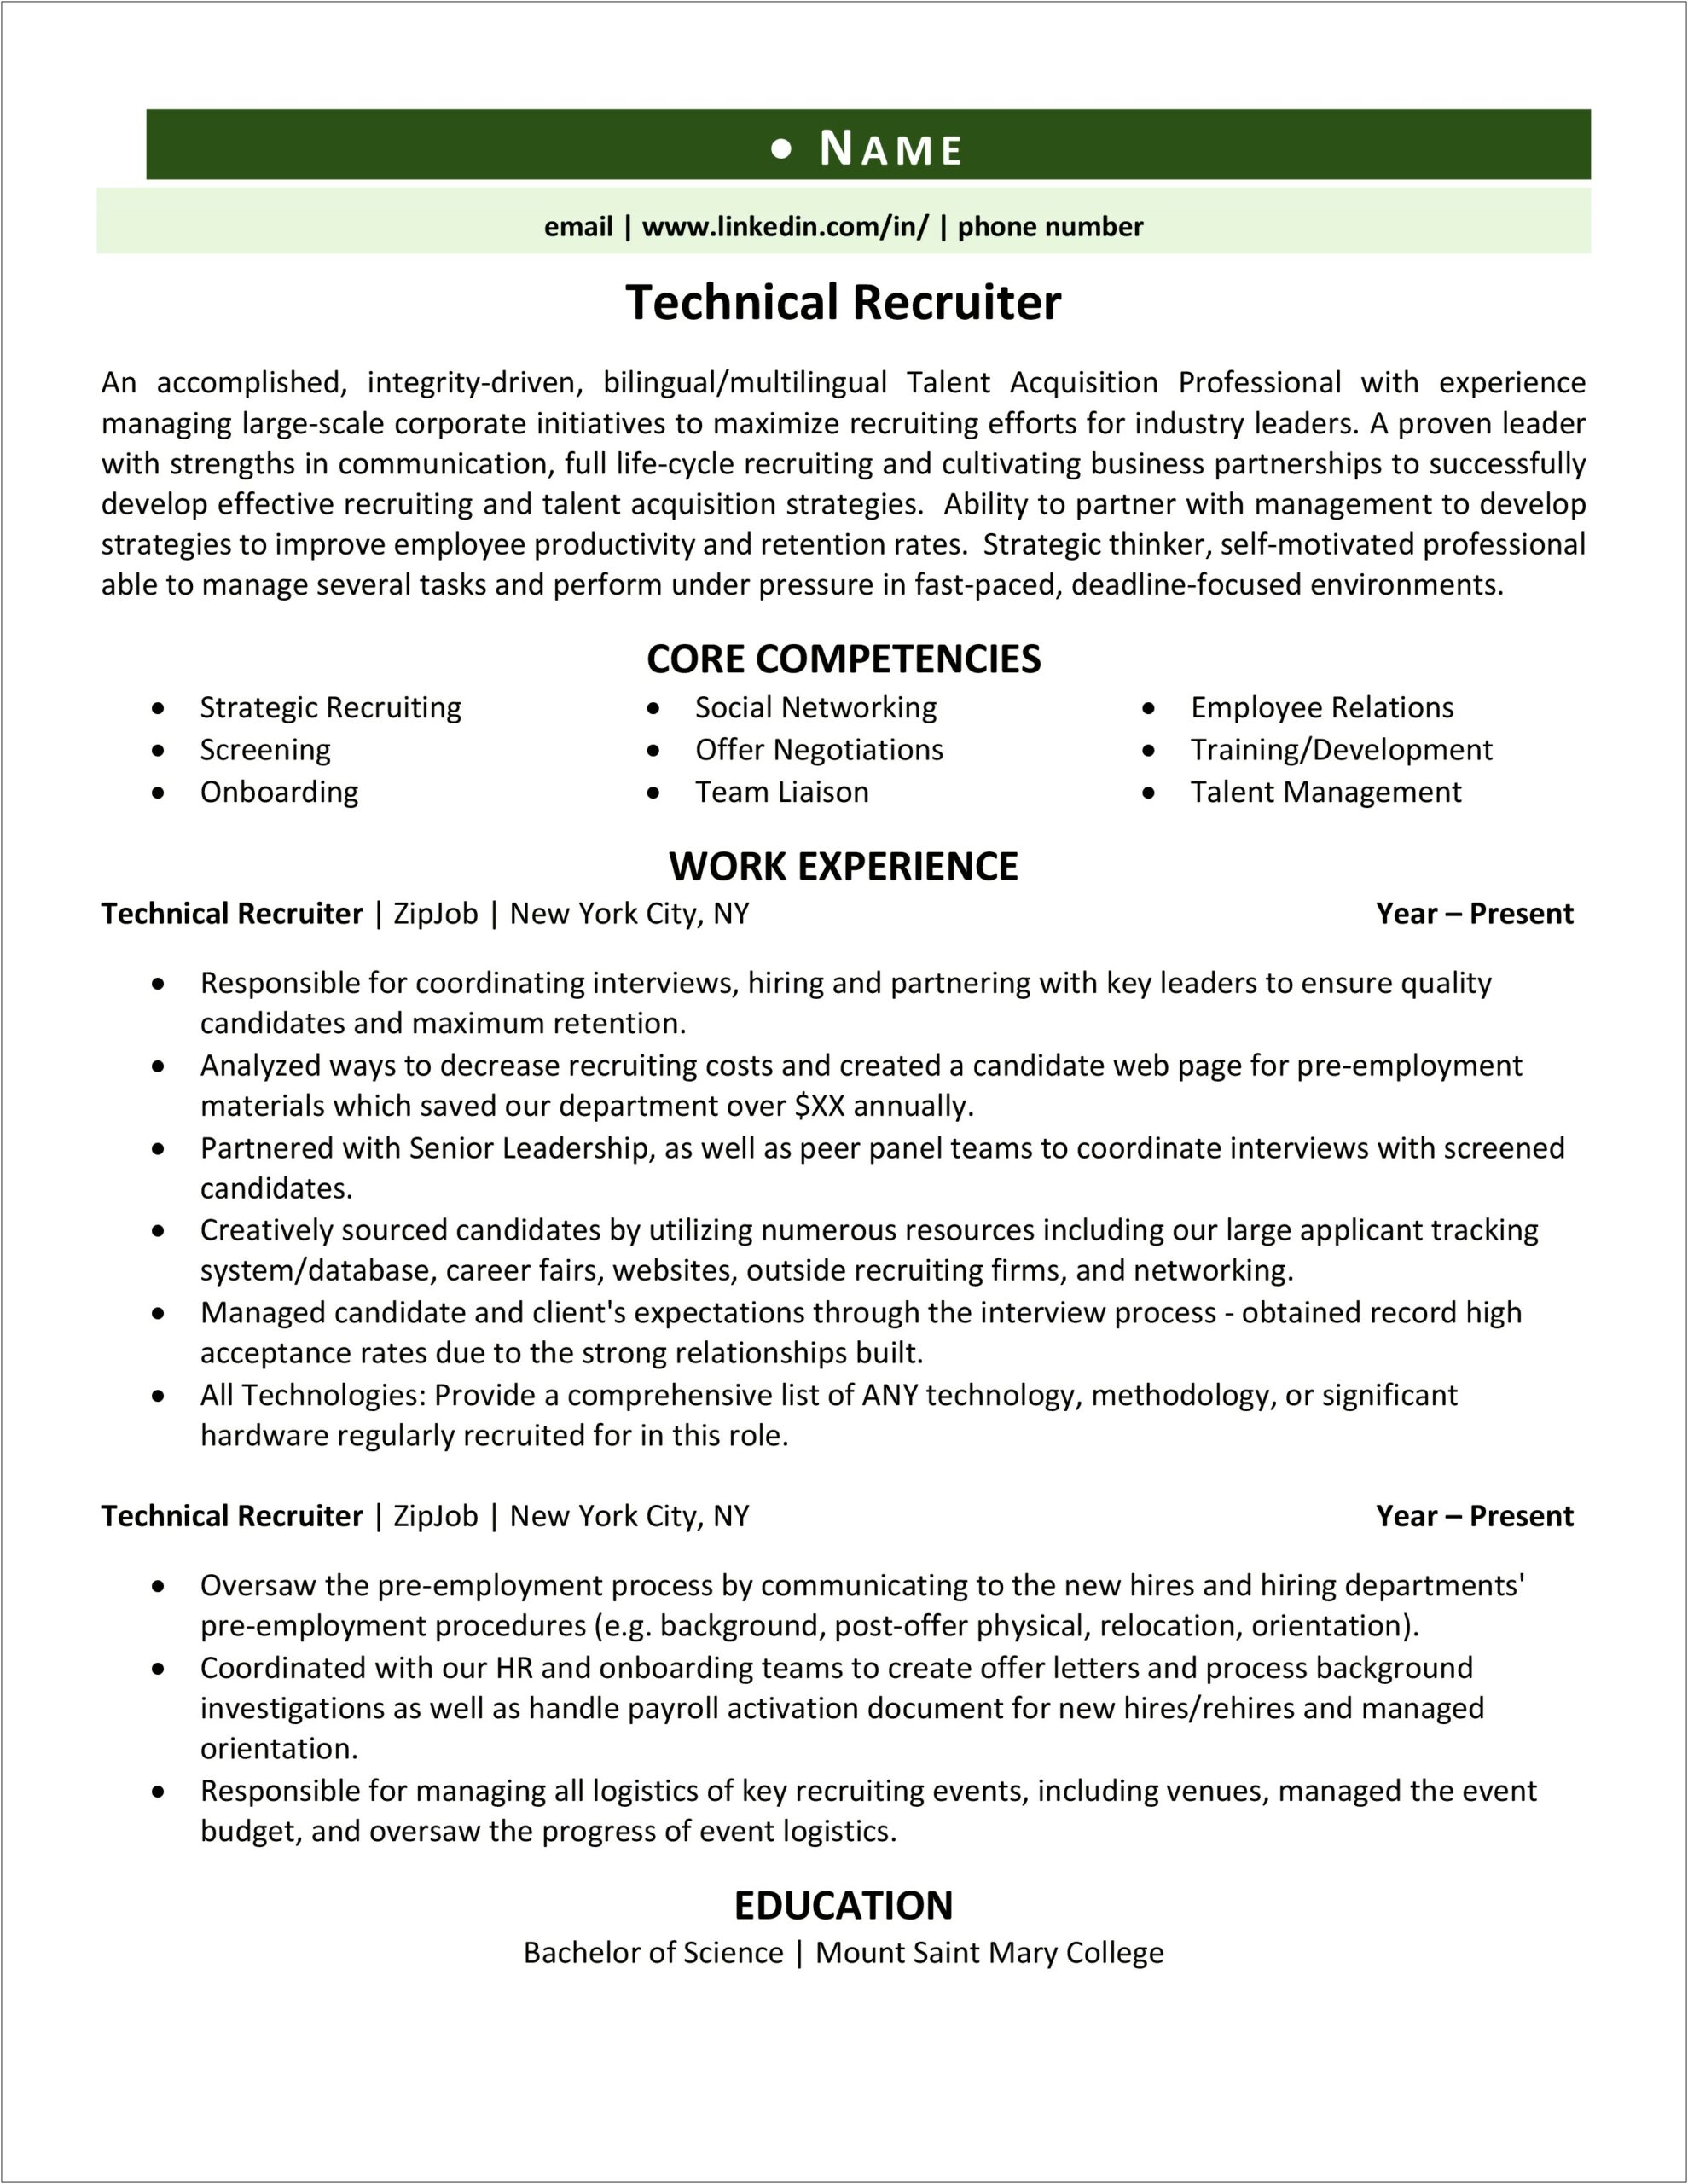 Adding Skills To Zip Recruiter Resume